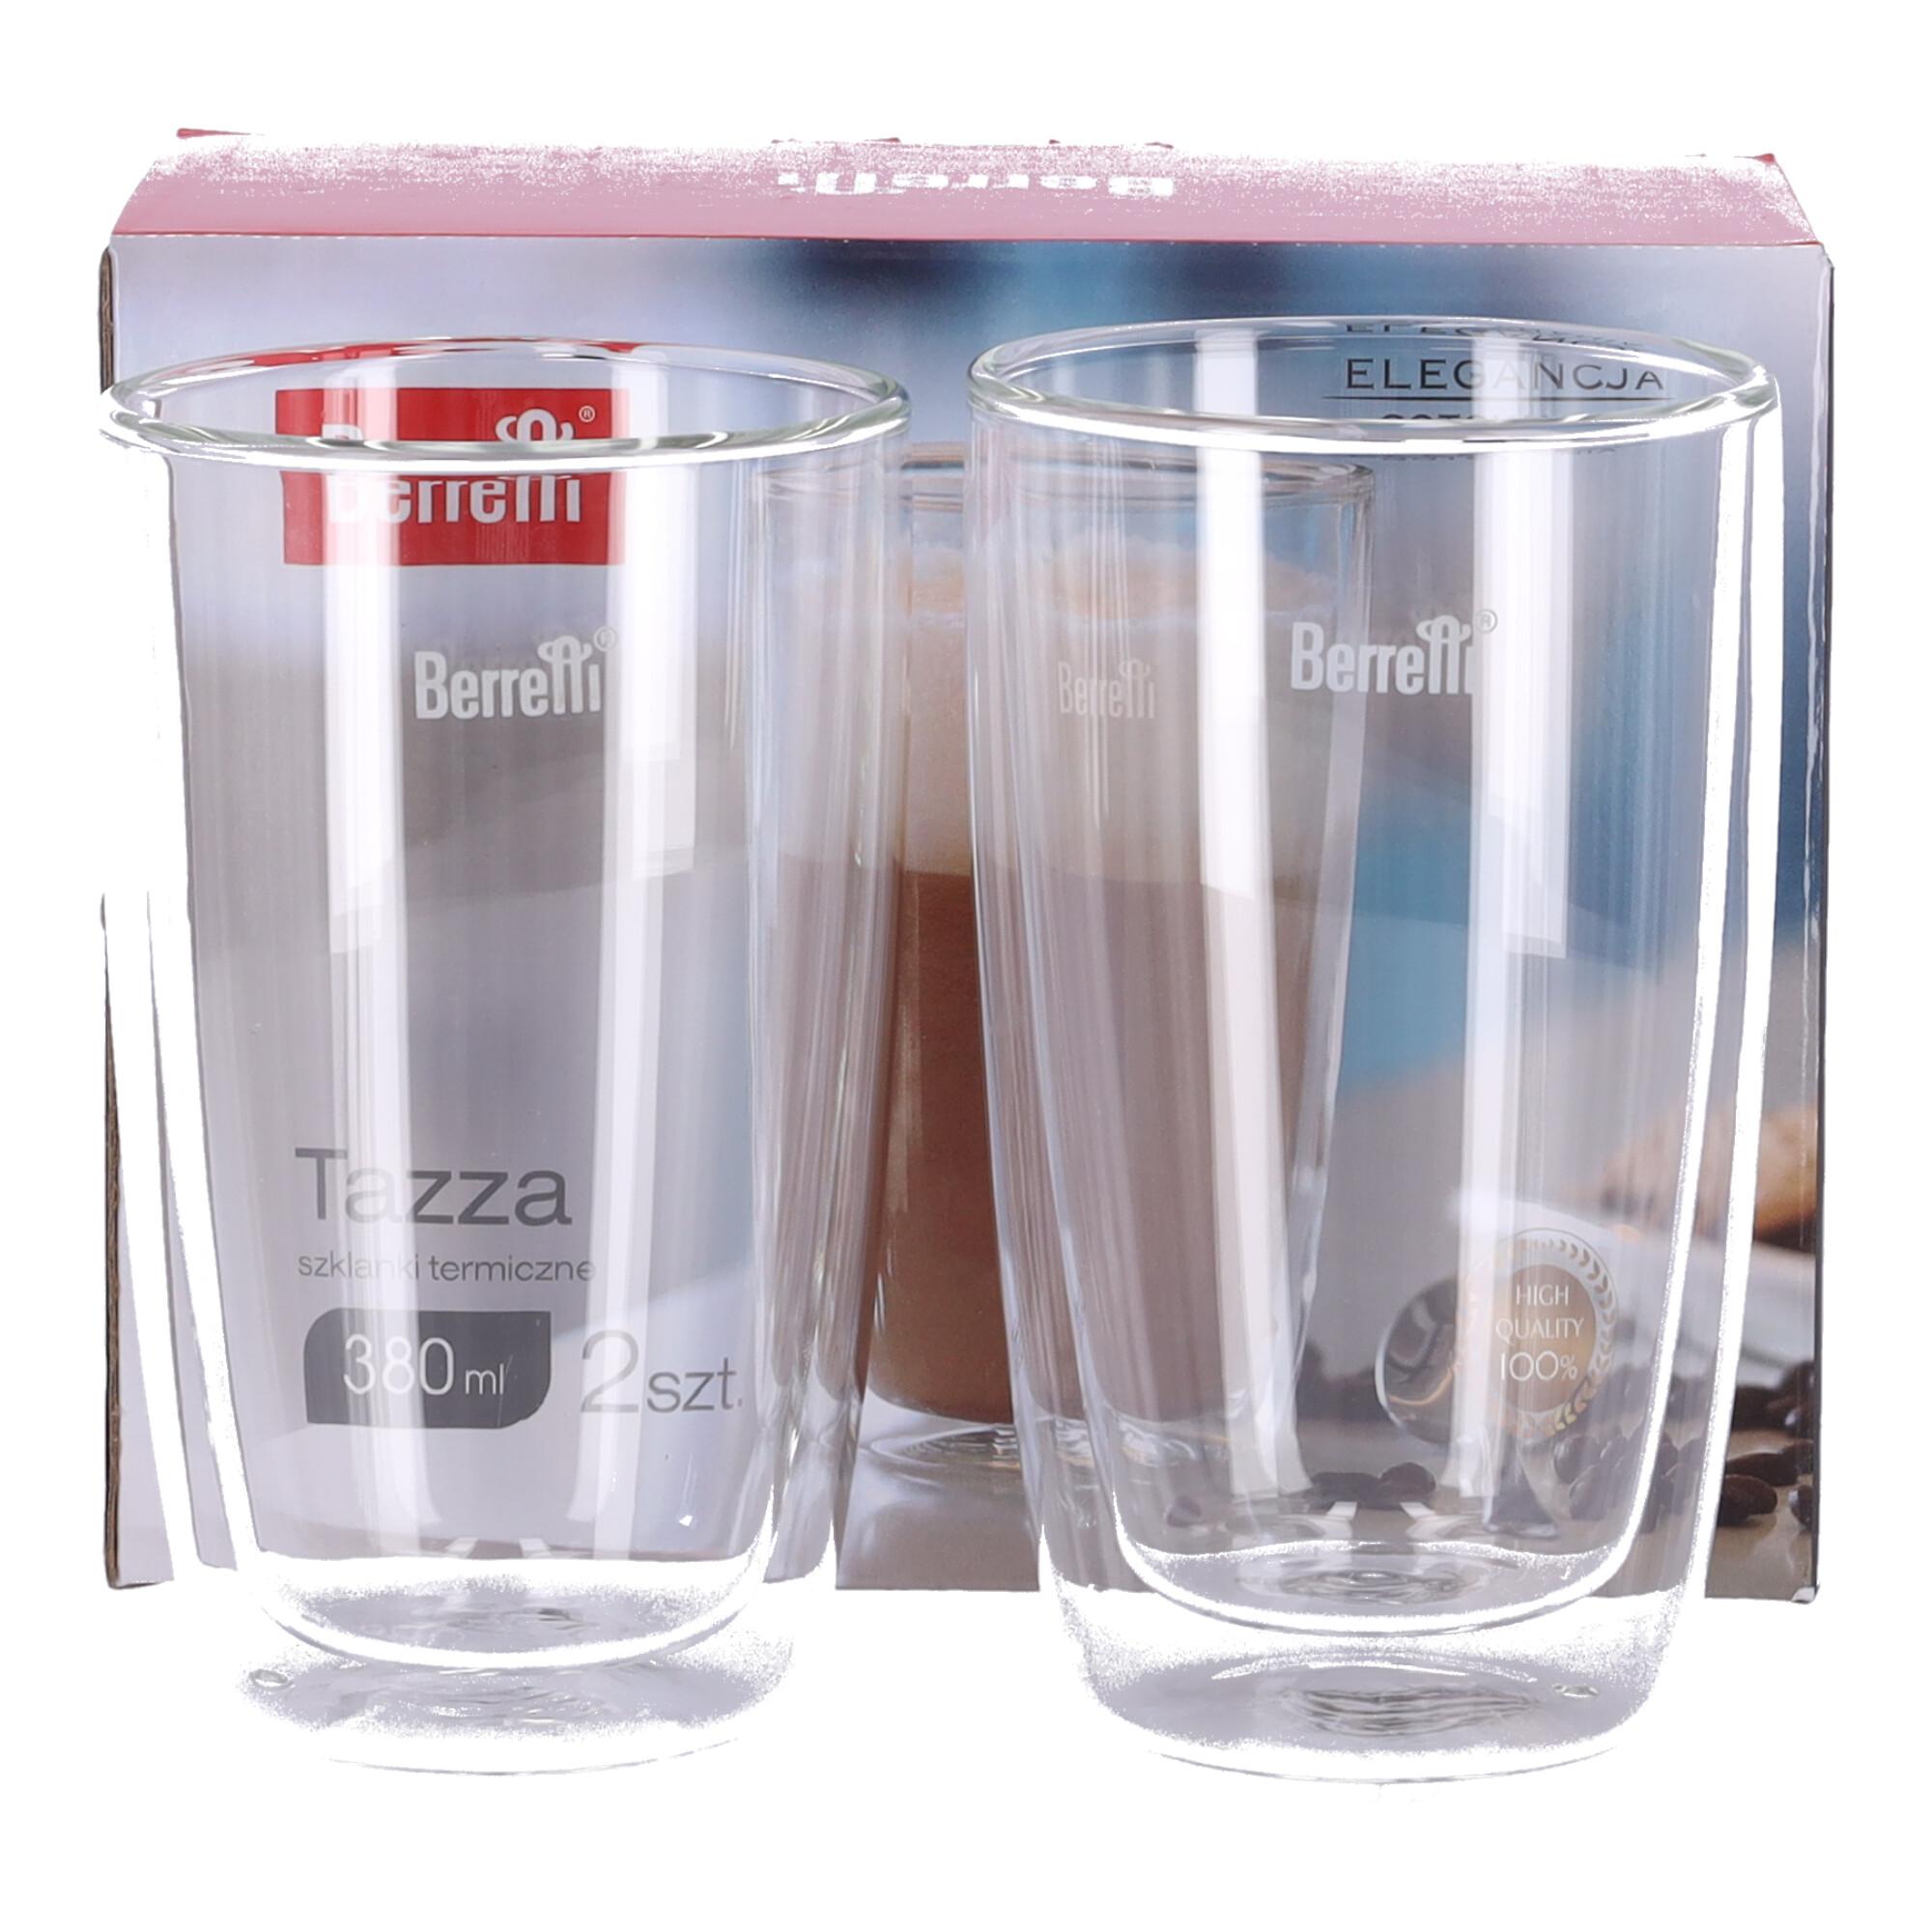 Set of 2 thermo glasses with handle Tazza BERRETTI, 380 ml